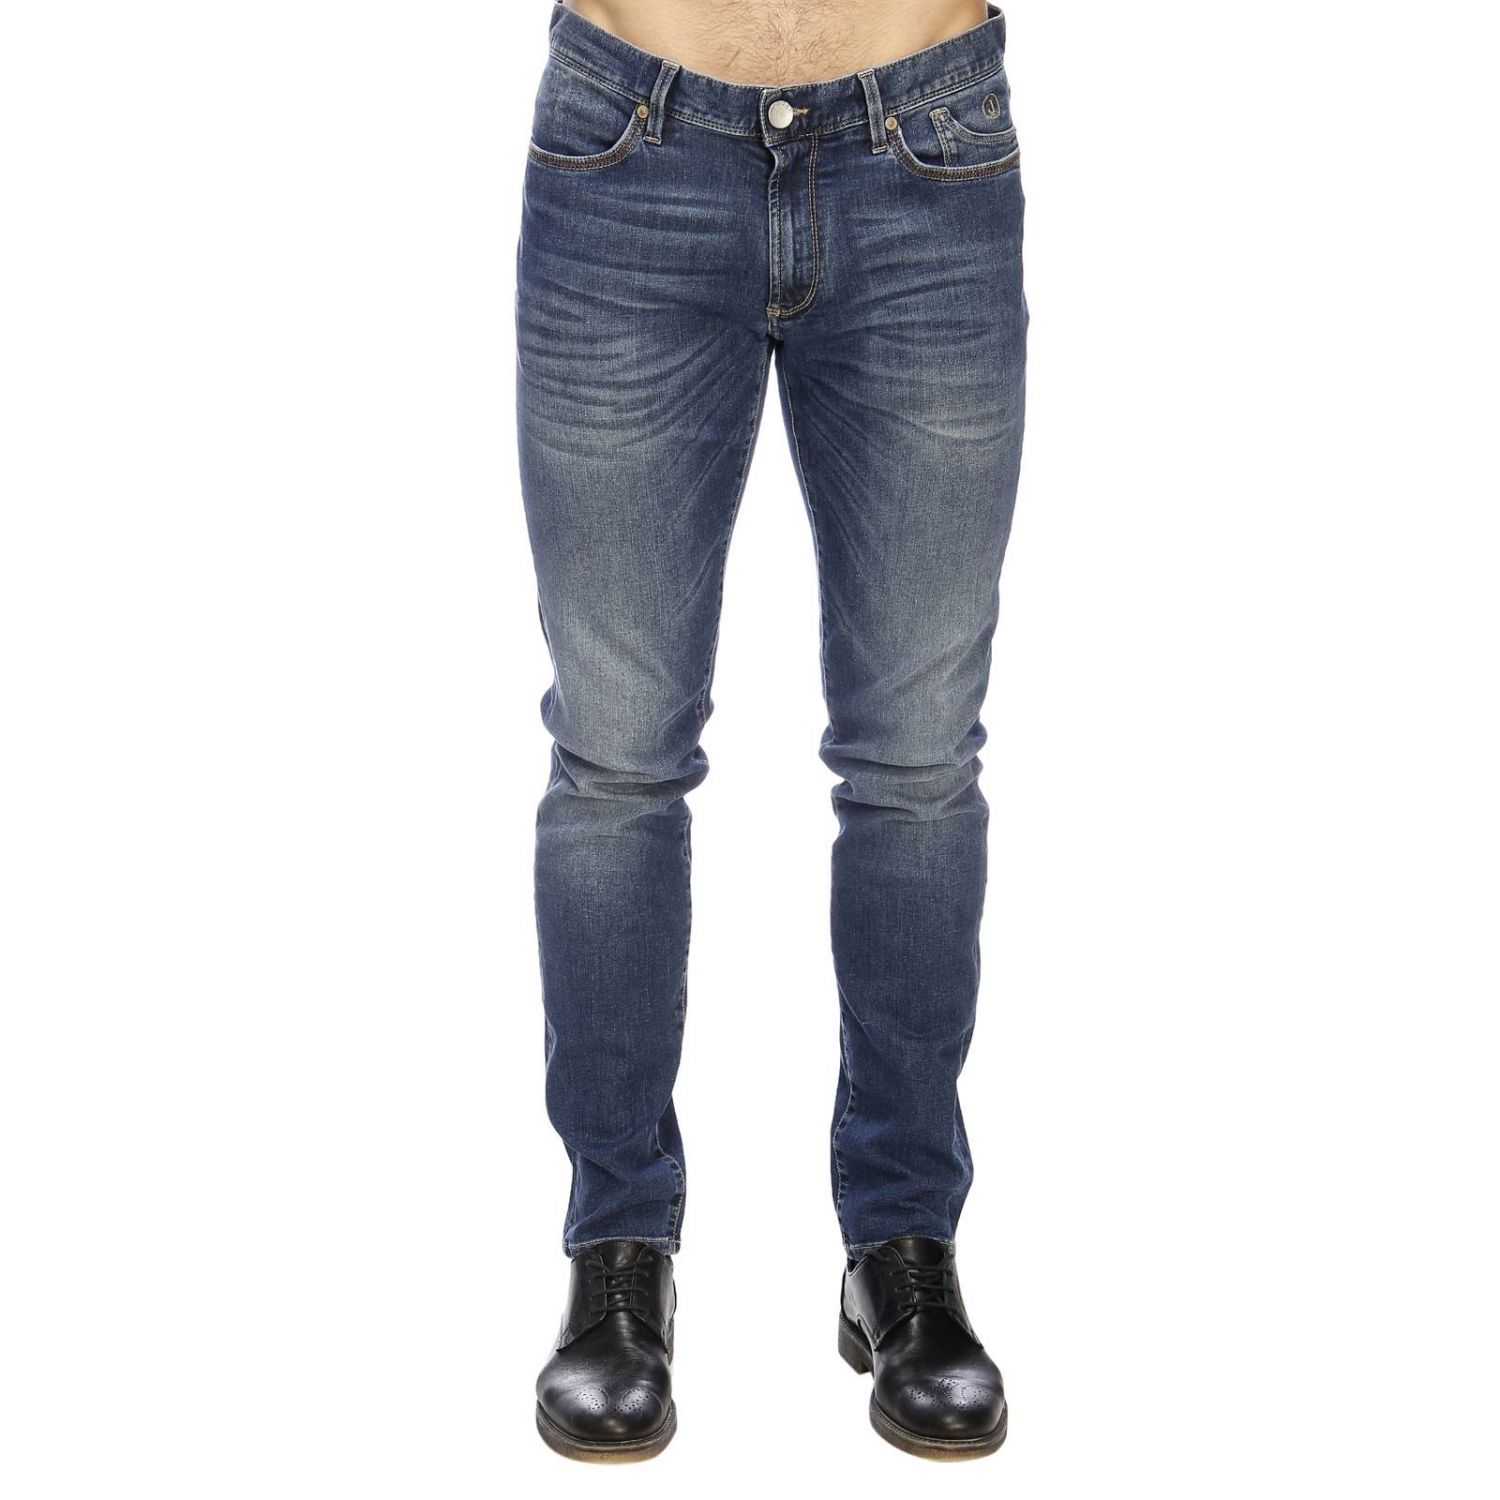 Jeckerson Outlet: jeans for man - Blue | Jeckerson jeans PA079 D040085 ...